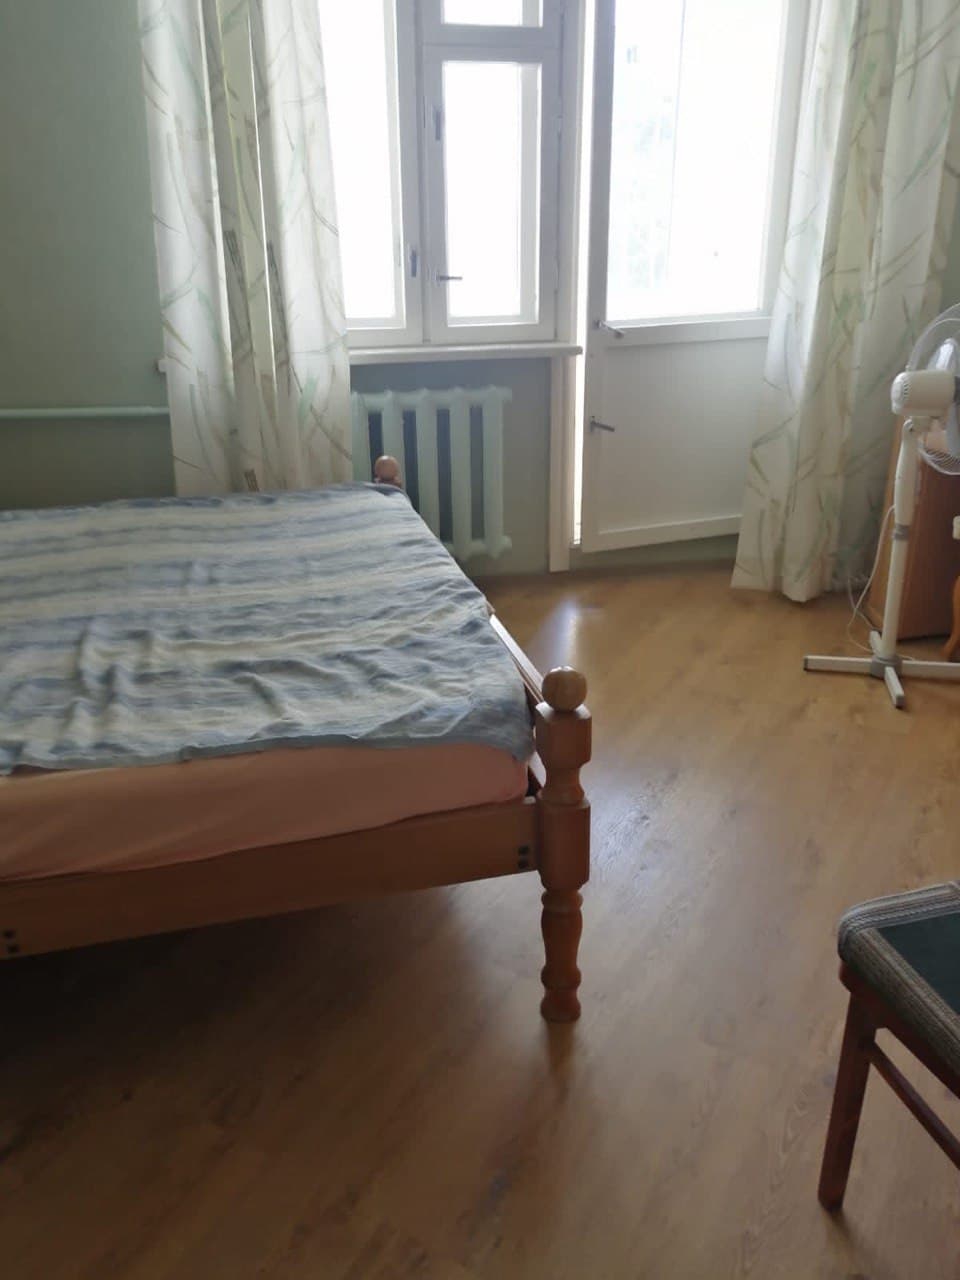 Квартира в Геленджике цена 7,25 млн.р. 

Купите трёхкомнатную квартиру в Геленджике на Баргузинской